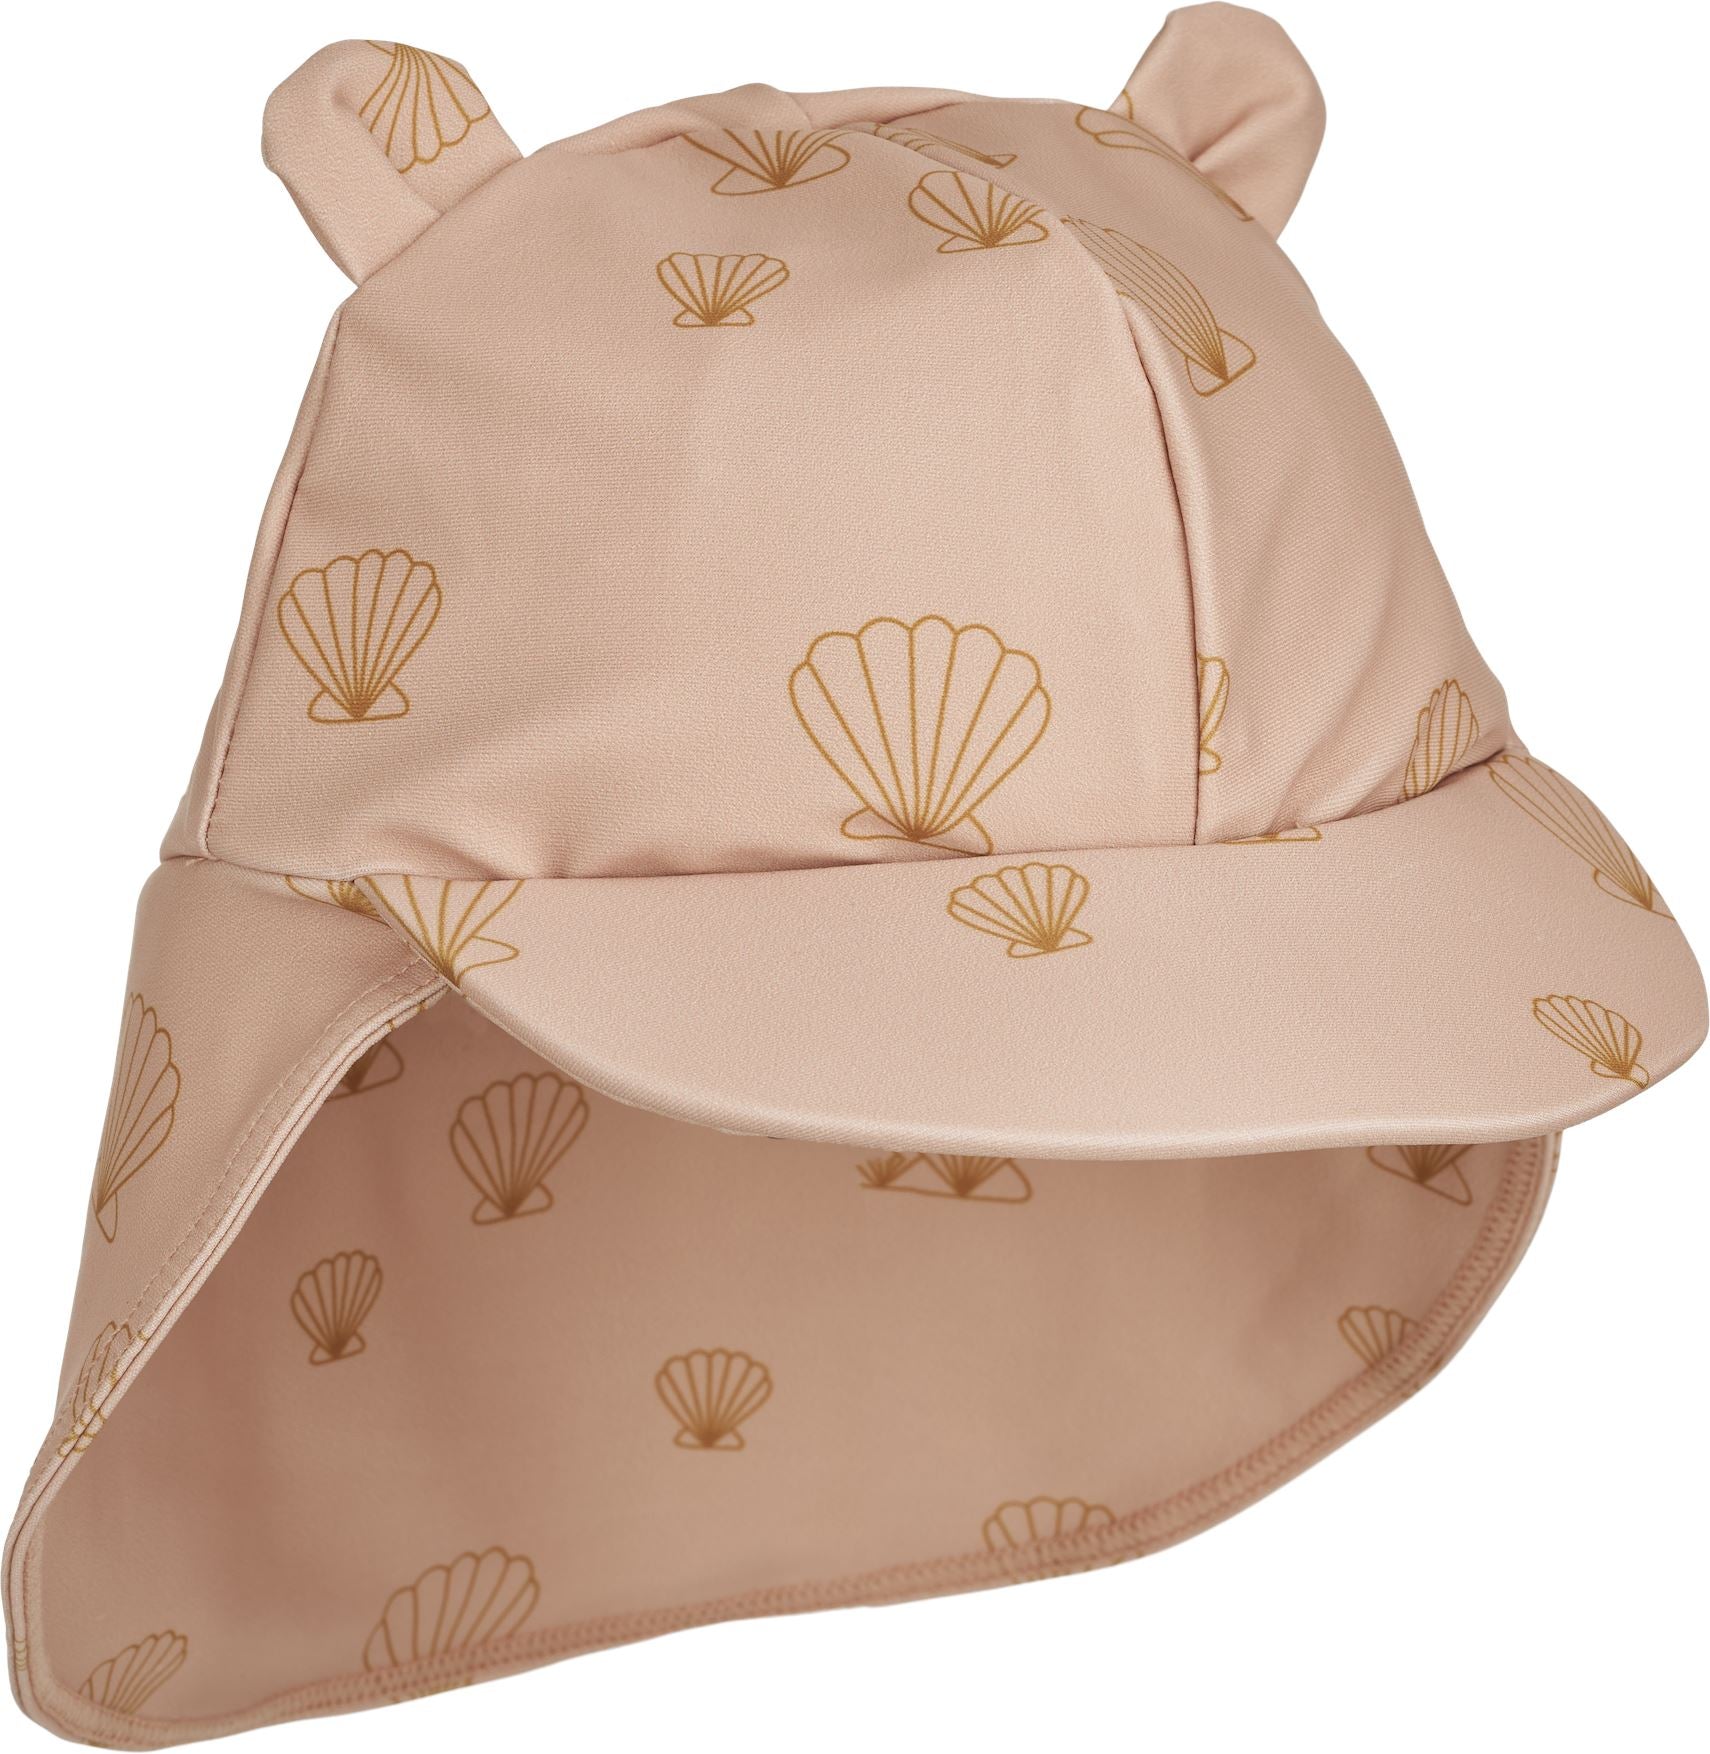 chapeau de soleil Senia sea shell / pale tuscany - LIEWOOD LW17682 1033 0/3 5715335239869